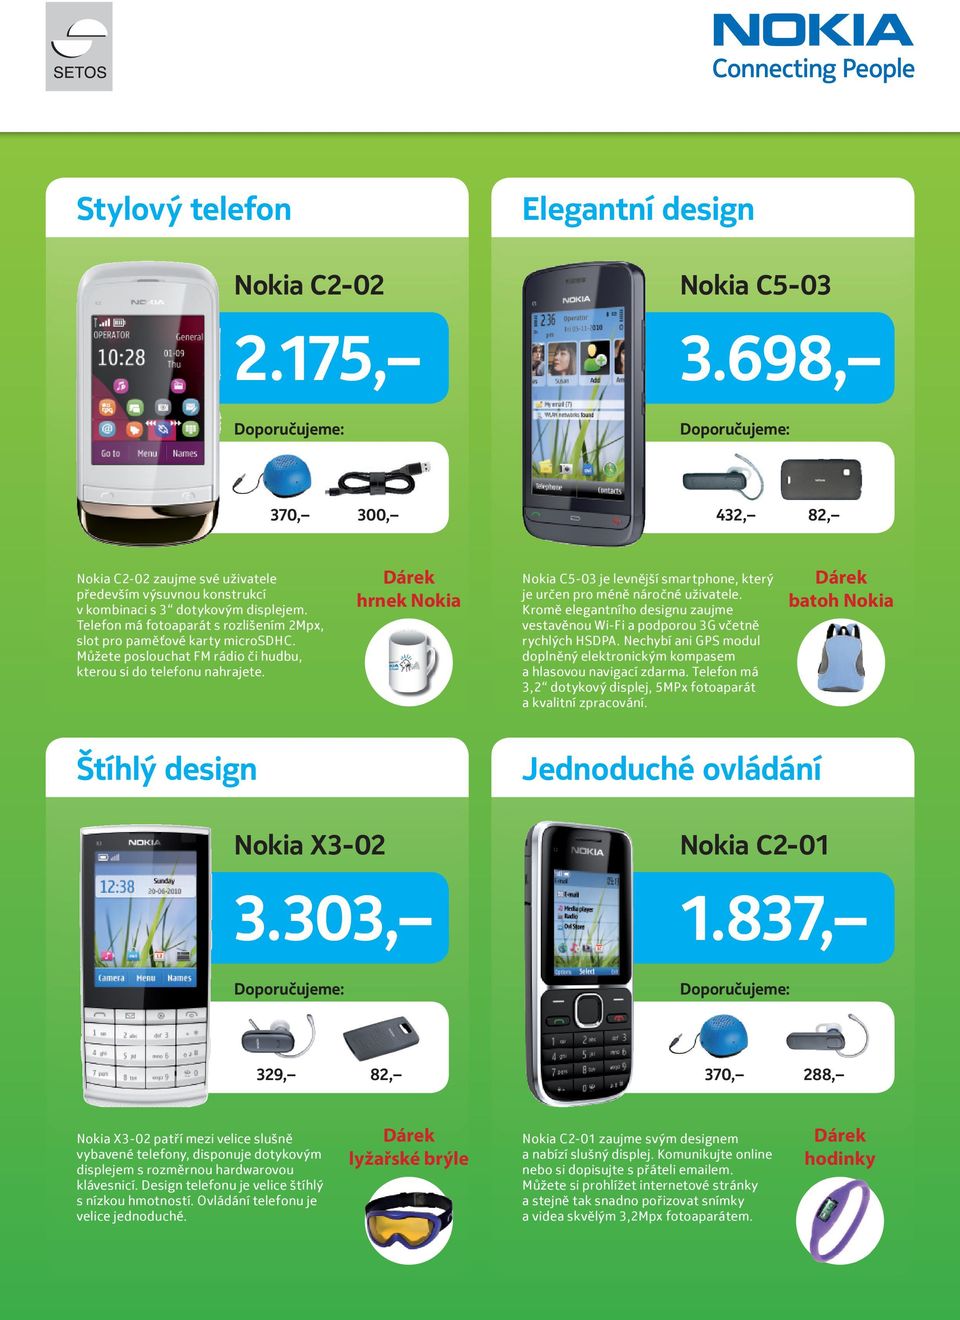 hrnek Nokia Nokia C5-03 je levnější smartphone, který je určen pro méně náročné uživatele. Kromě elegantního designu zaujme vestavěnou Wi-Fi a podporou 3G včetně rychlých HSDPA.